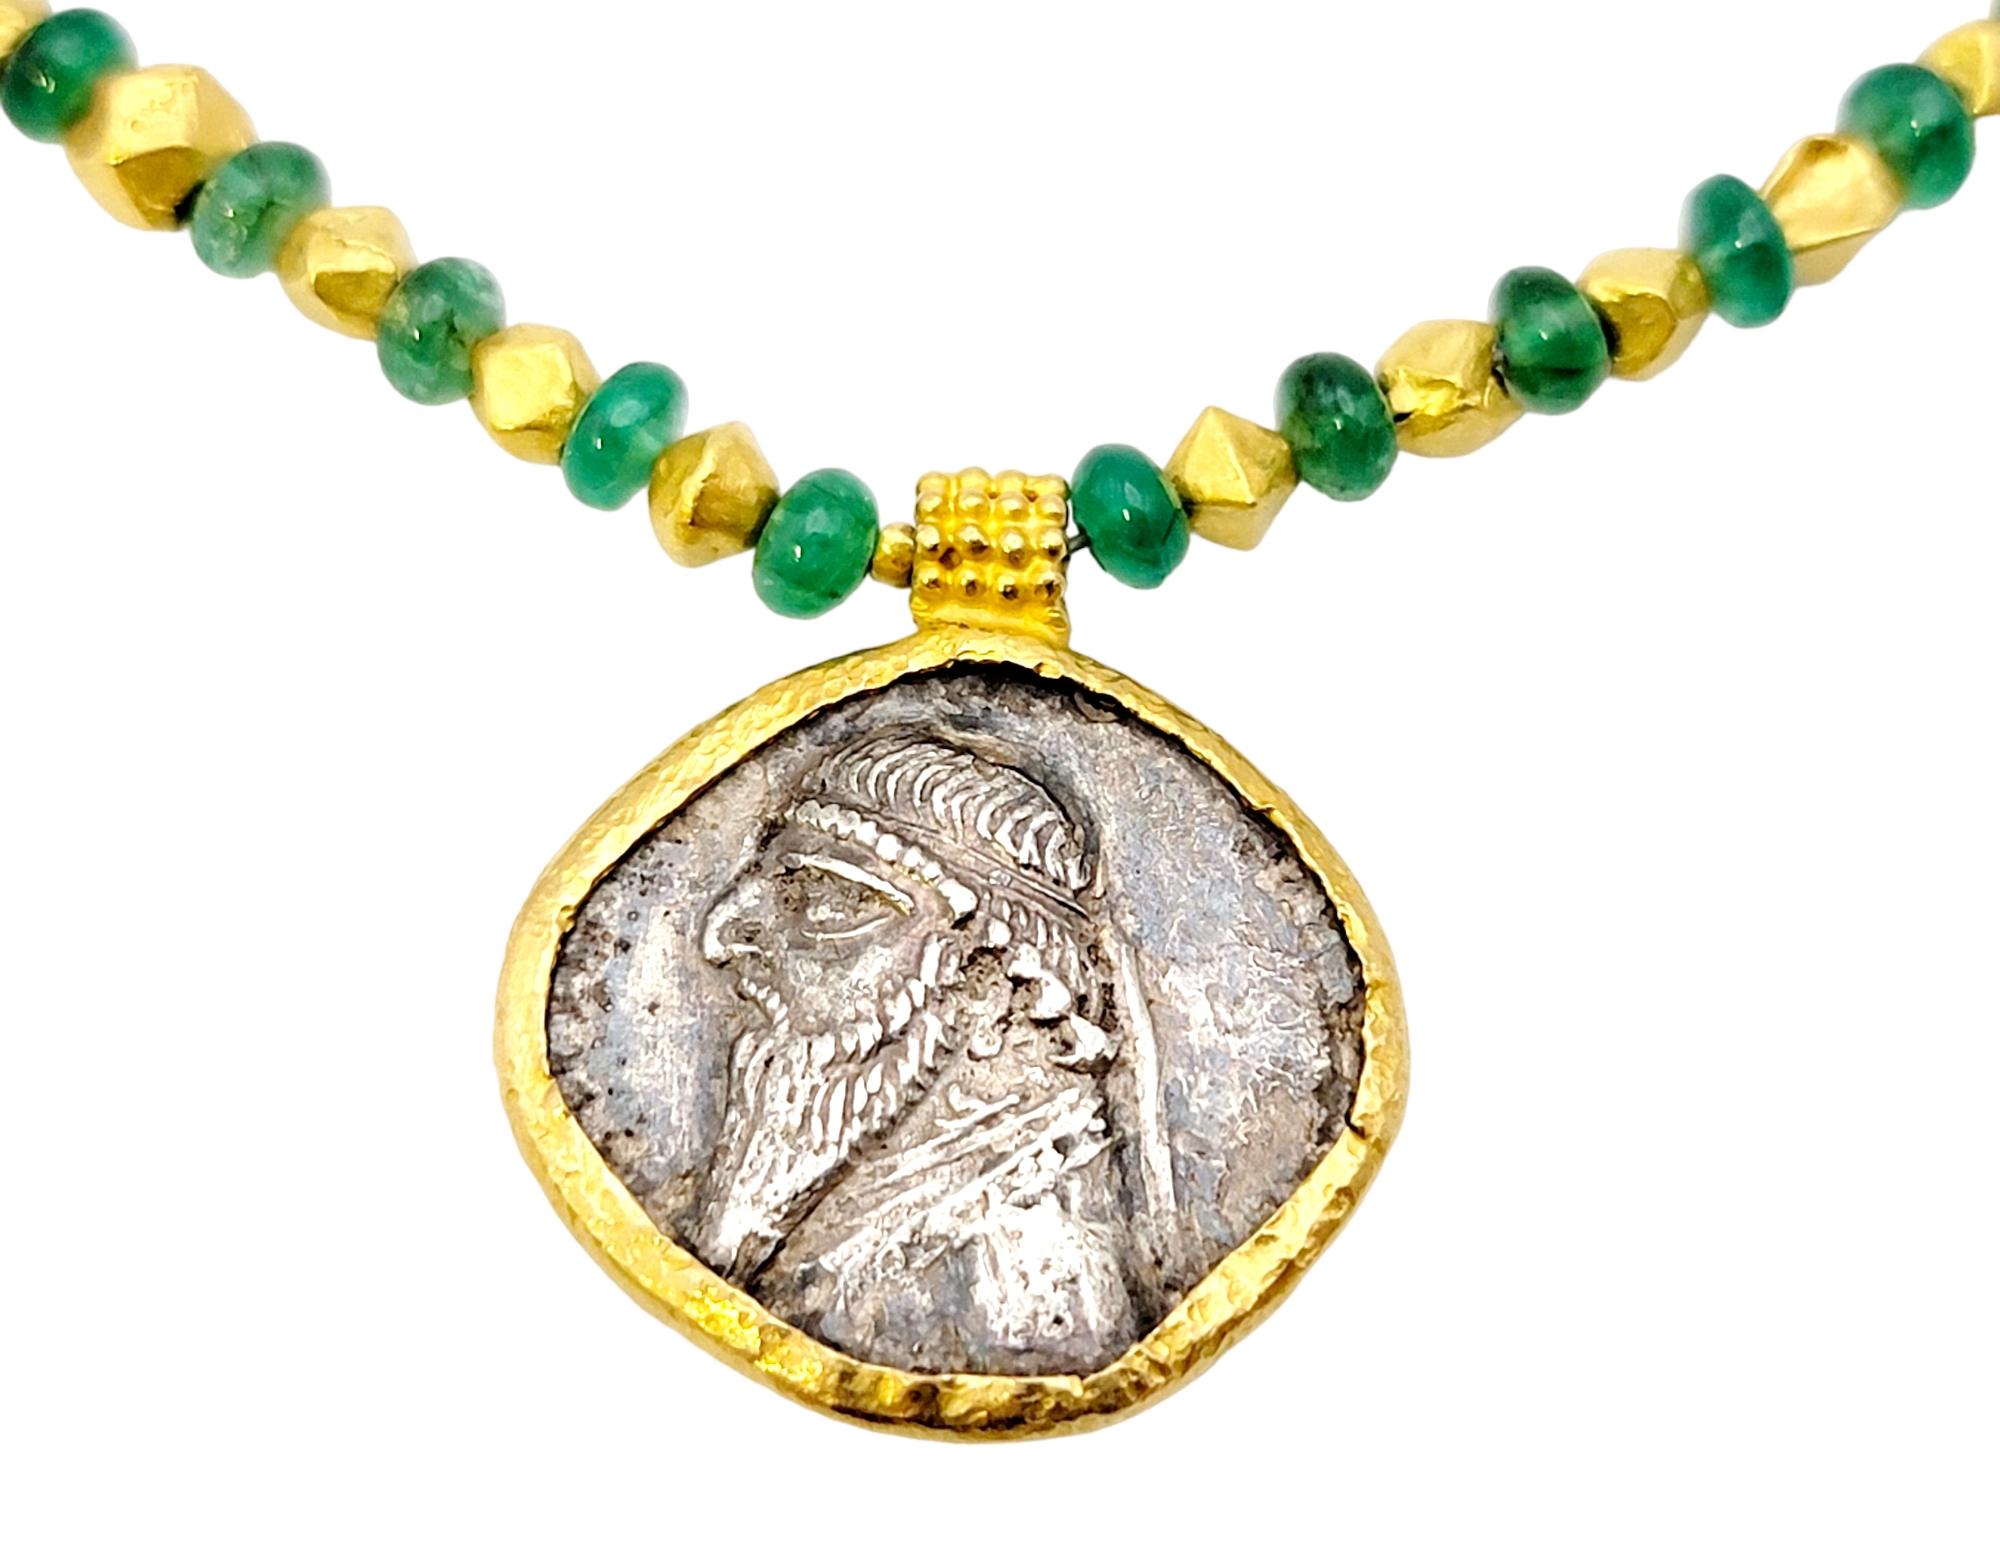 Collier pendentif en argent ancien avec un tétradrachme de Mithridate II et de superbes perles d'émeraude. Cette pièce impressionnante a été créée vers 109-95 av. J.-C. et ses incroyables détails sont encore visibles ! 

Cette pièce unique présente